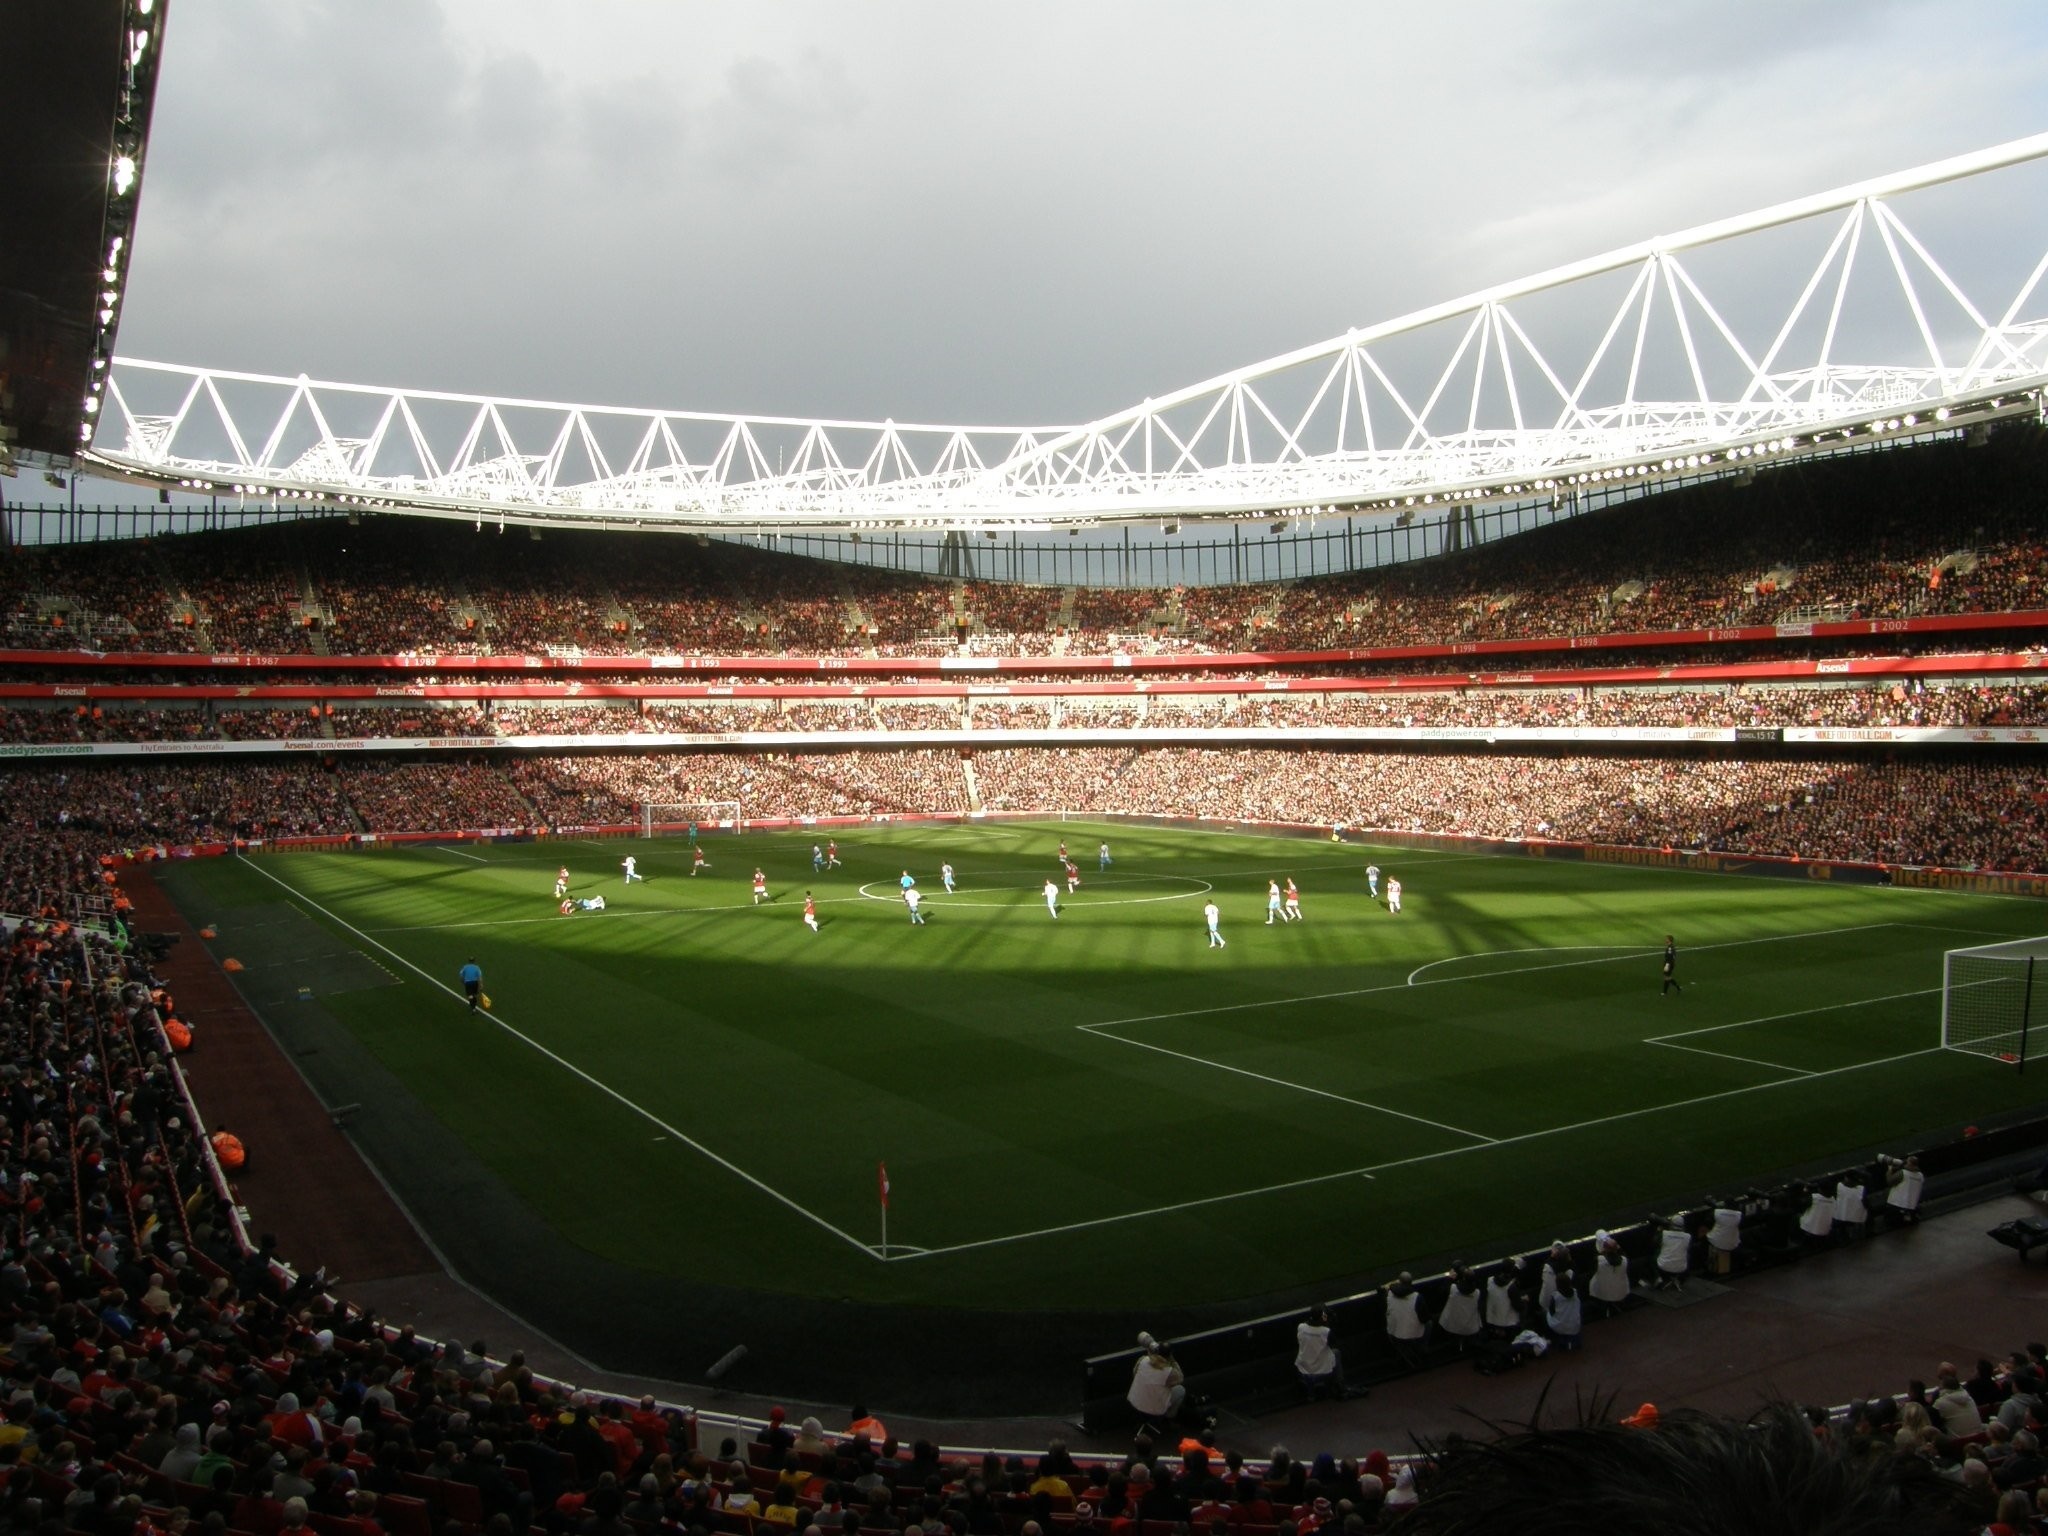 Emirates stadium, HD background images, Premier League venue, Football oasis, 2050x1540 HD Desktop